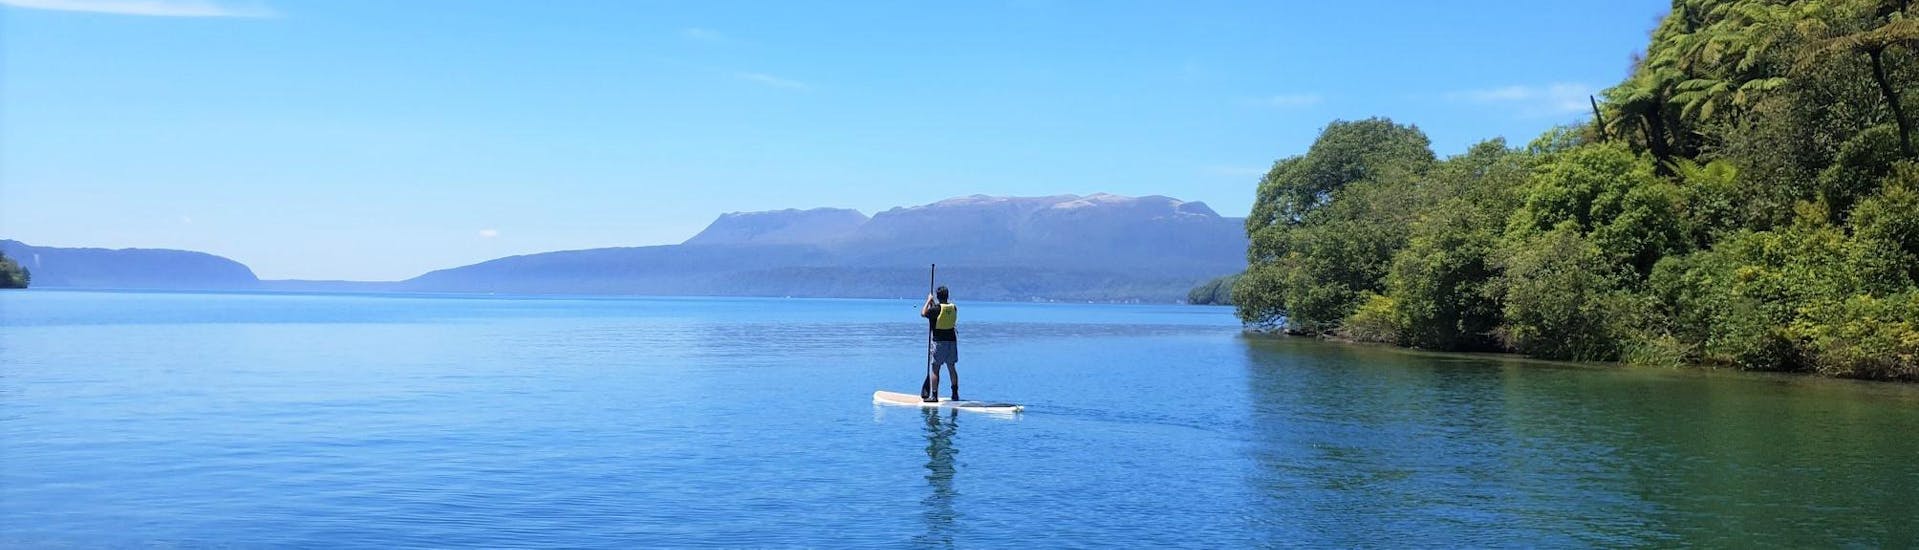 Paddle Board Rotorua - Adventure Tour